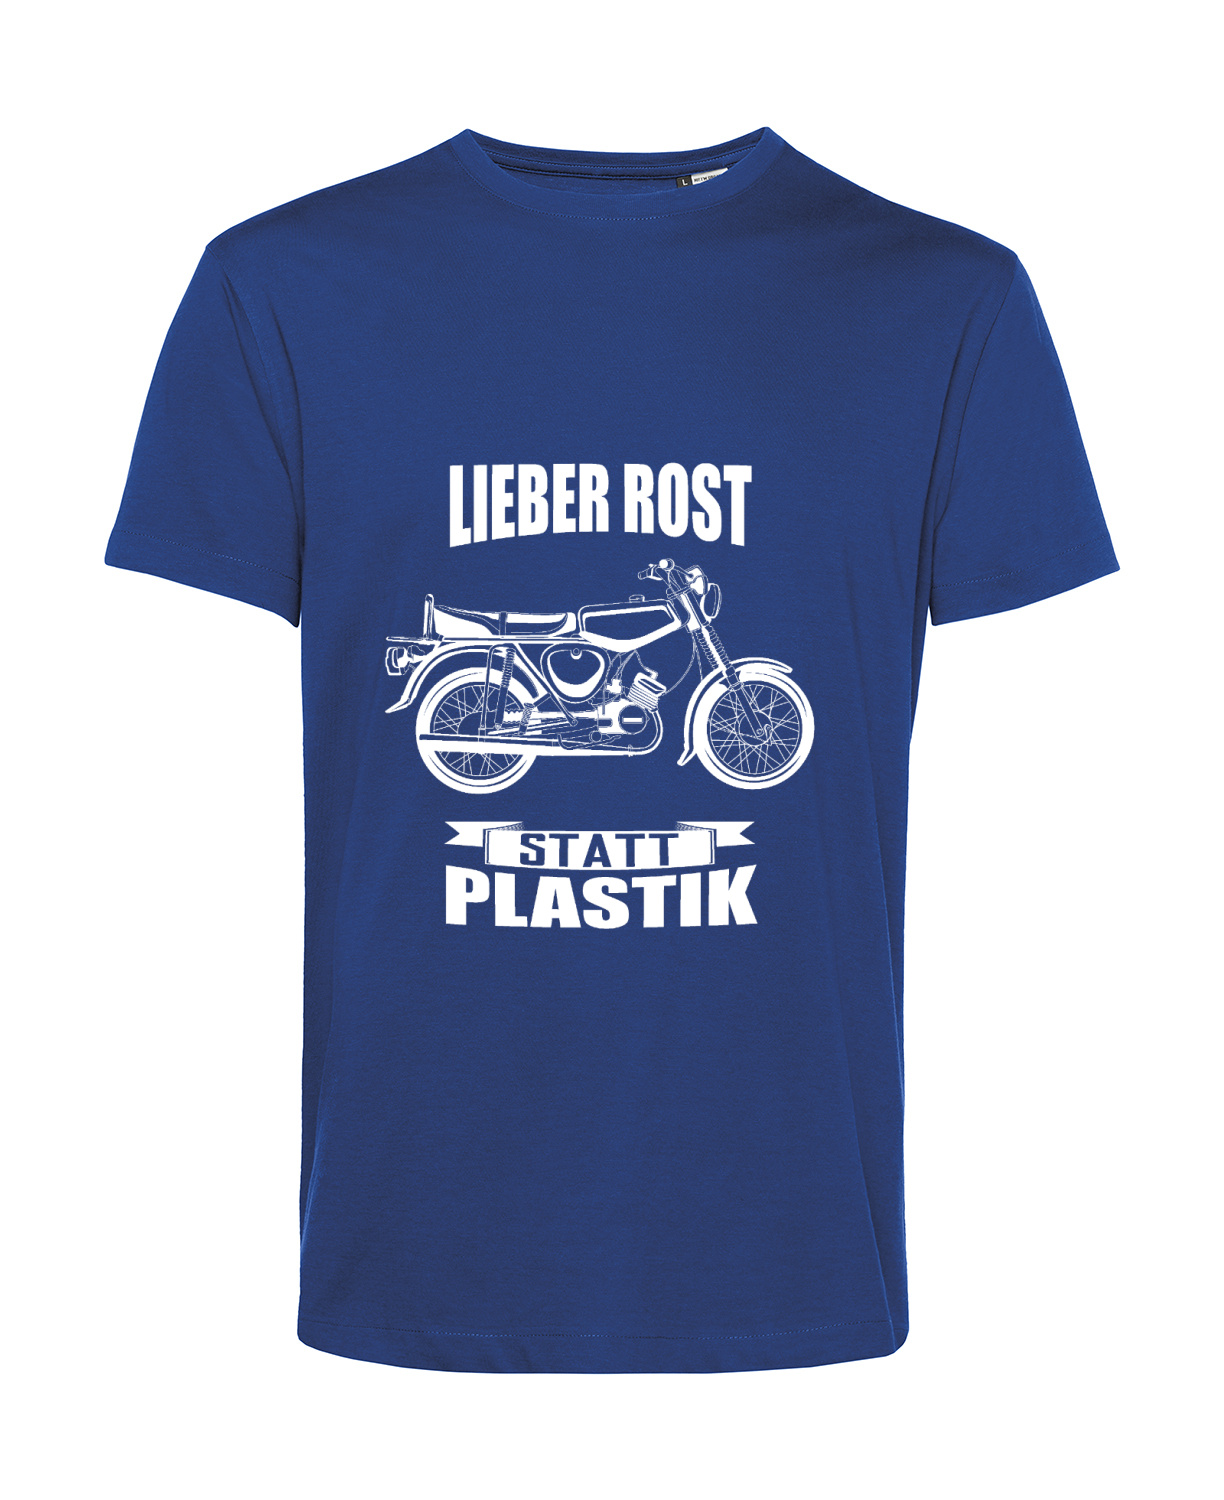 Nachhaltiges T-Shirt Herren 2Takter - Lieber Rost statt Plastik S50